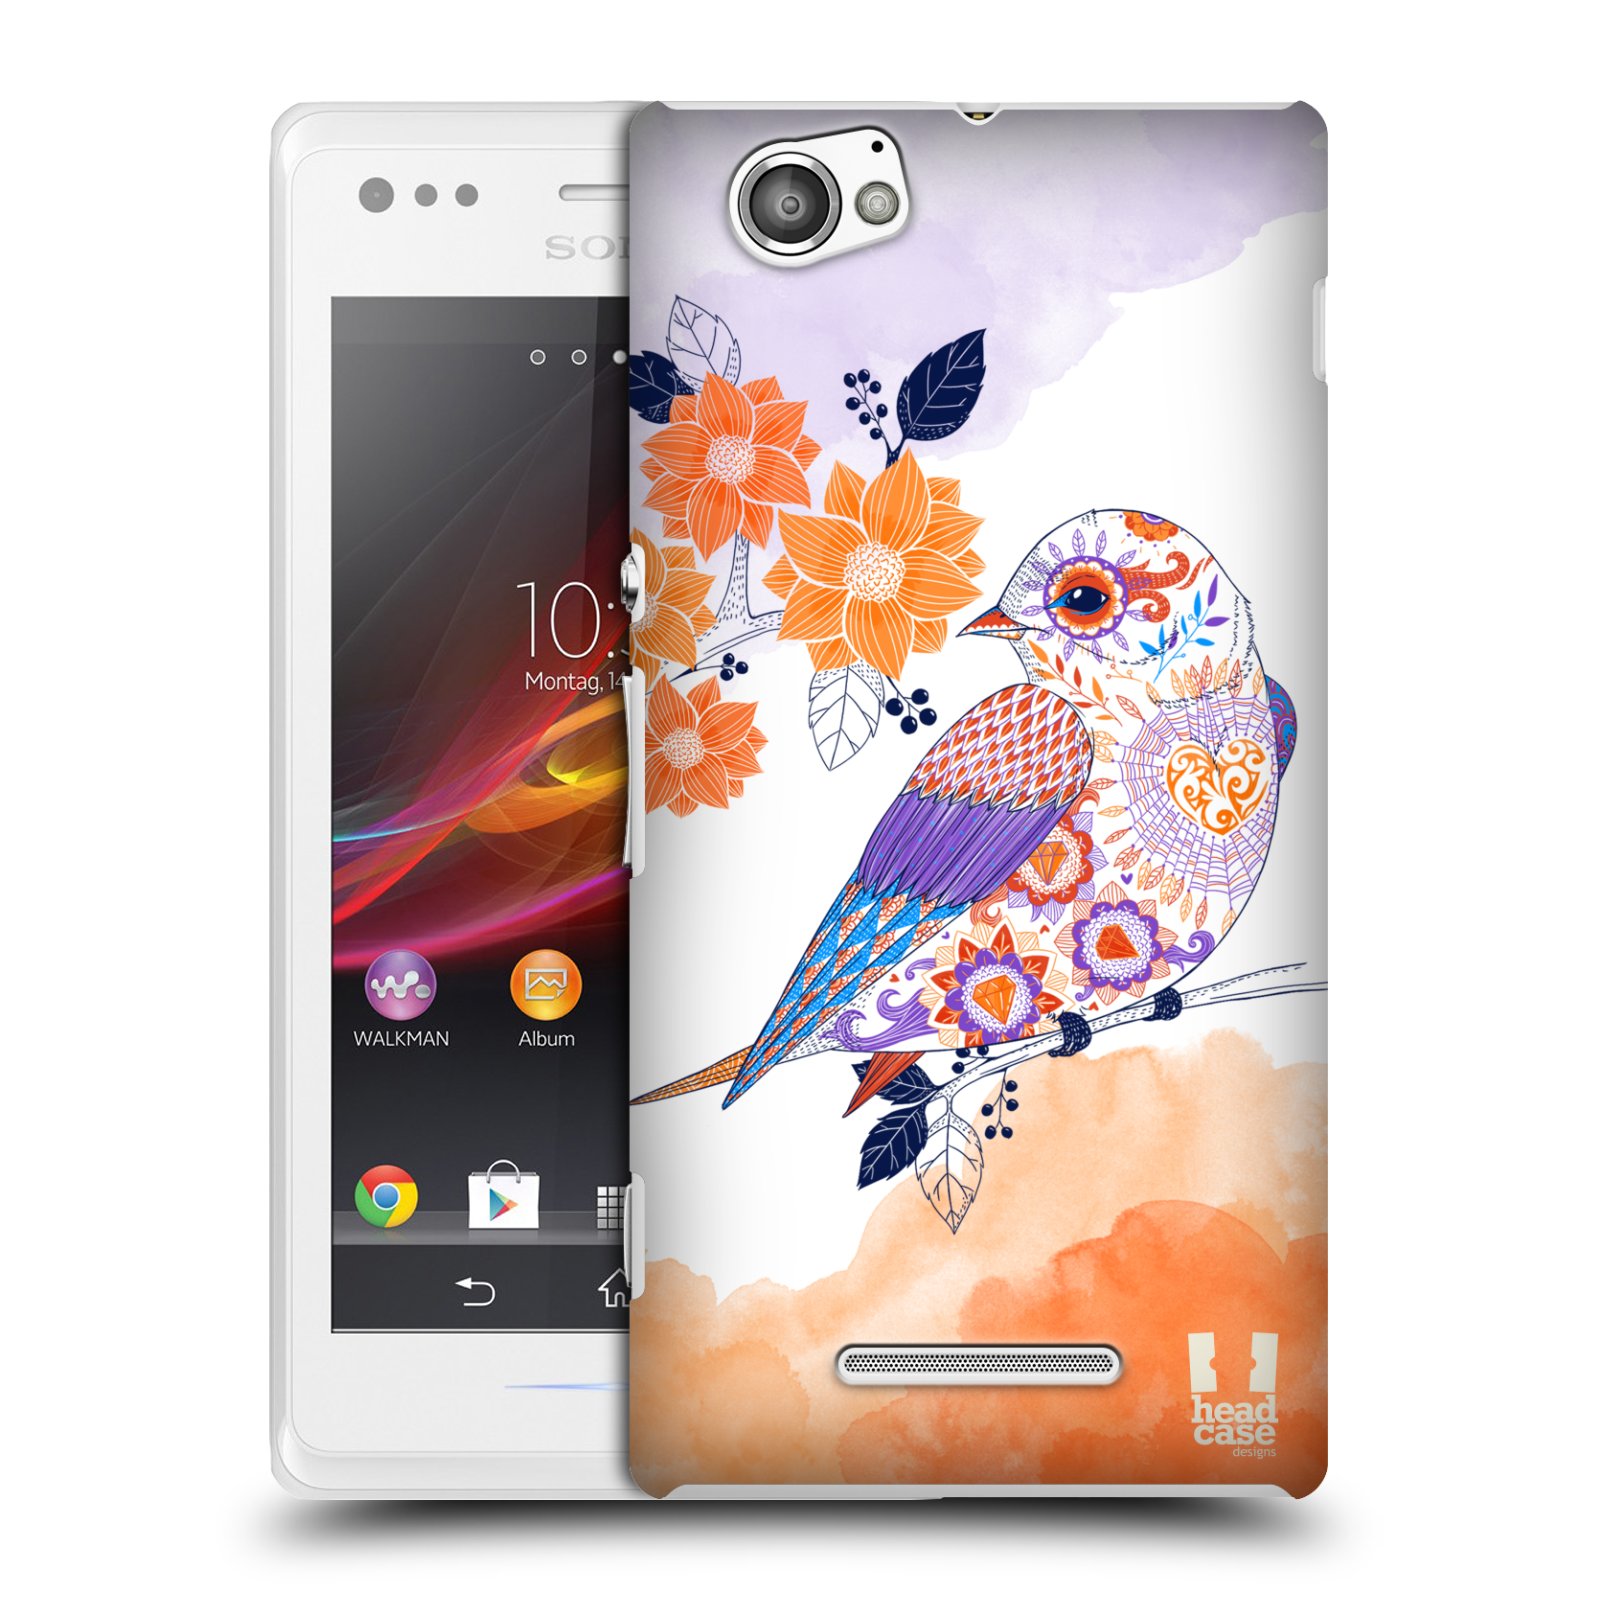 HEAD CASE plastový obal na mobil Sony Xperia M vzor Květina ptáčci ORANŽOVÁ